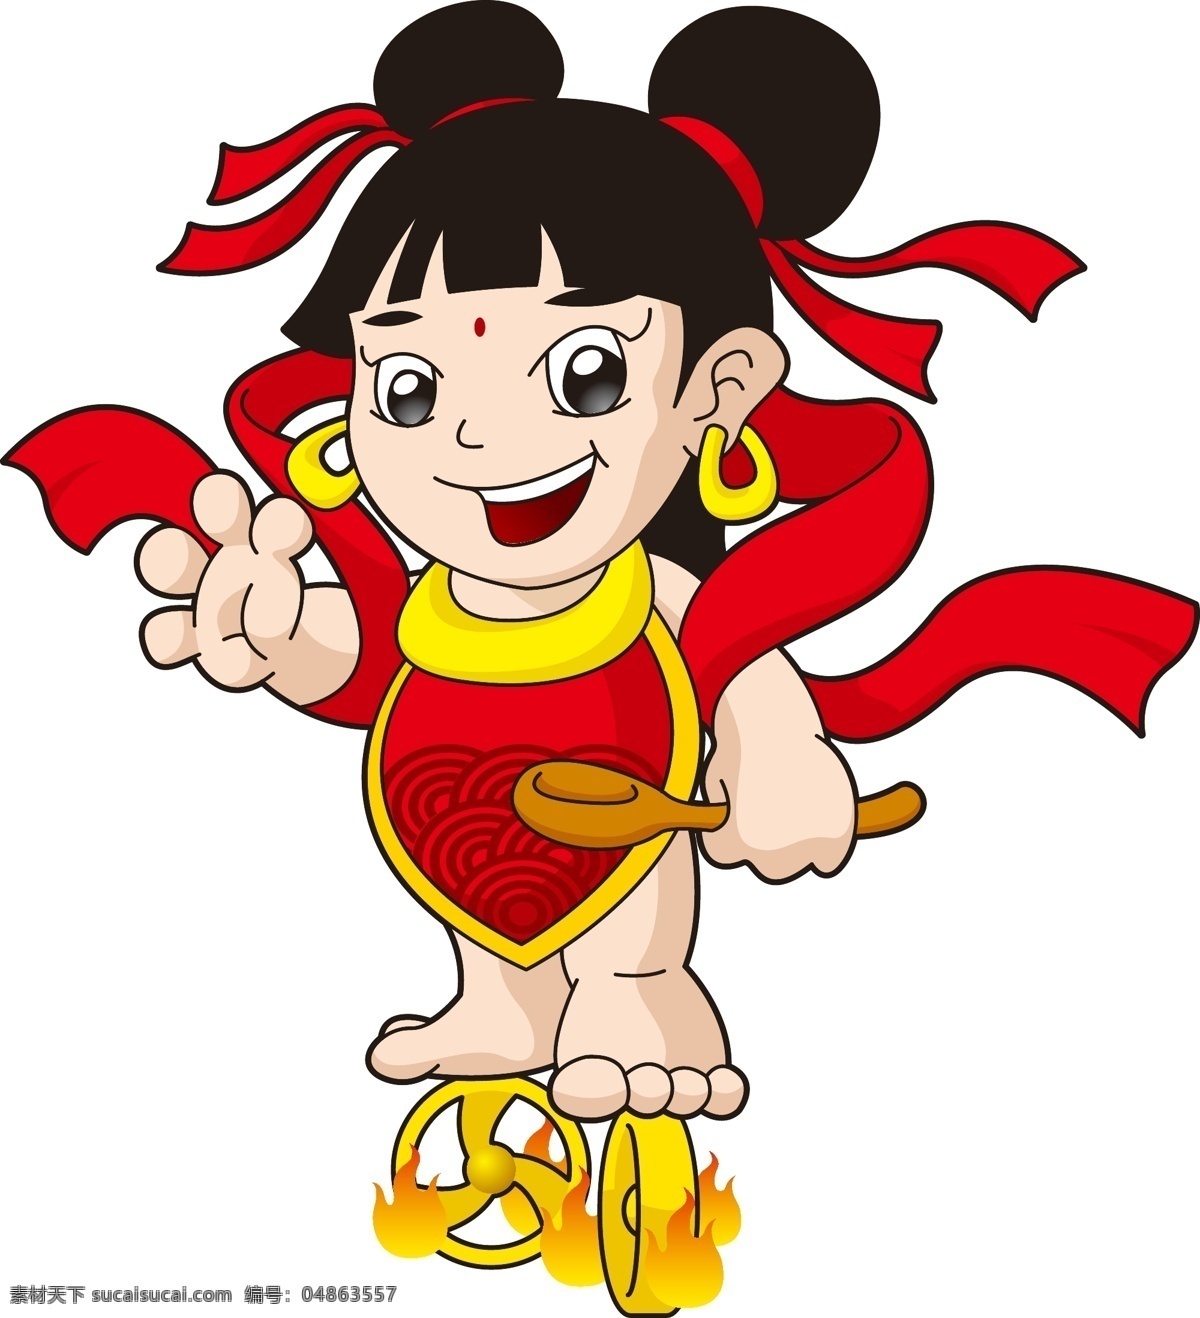 哪吒 企业 卡通 吉祥物 中国风 人物 餐饮 风火轮 笑容 勺子 红绸子 肚兜 耳环 食物吉祥物